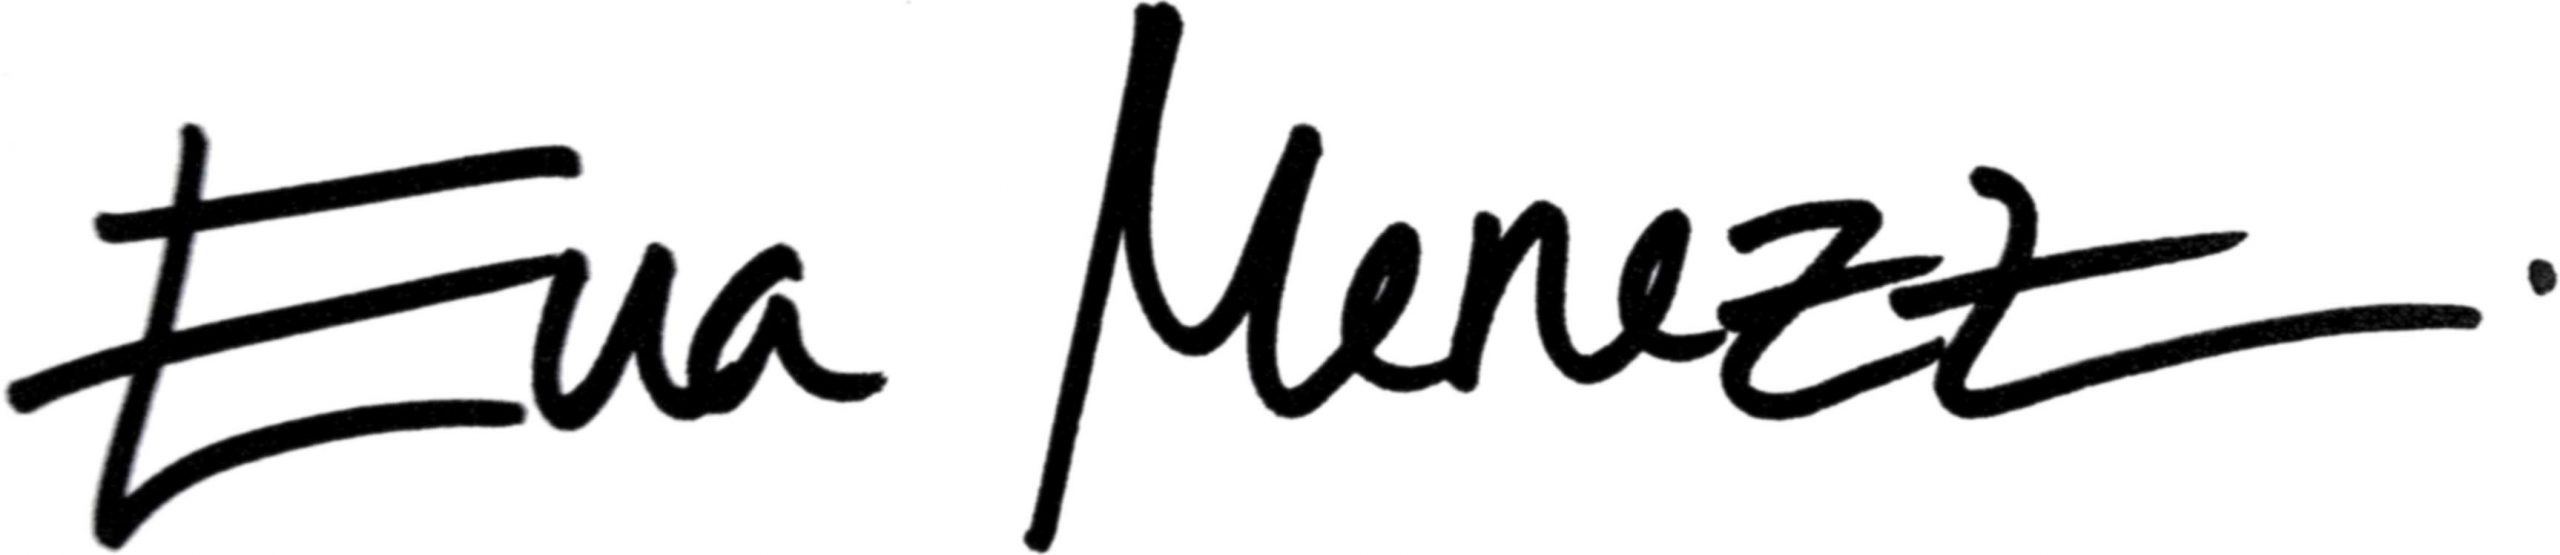 Logo Eva Menezz